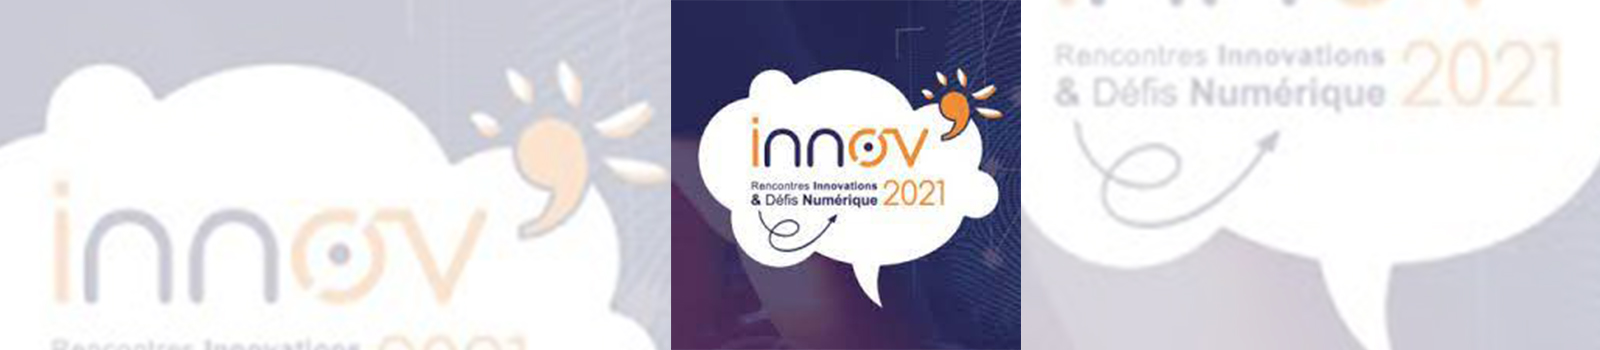 Innov2021 #3, Connecter la Recherche aux enjeux numériques des Banques et Assurances